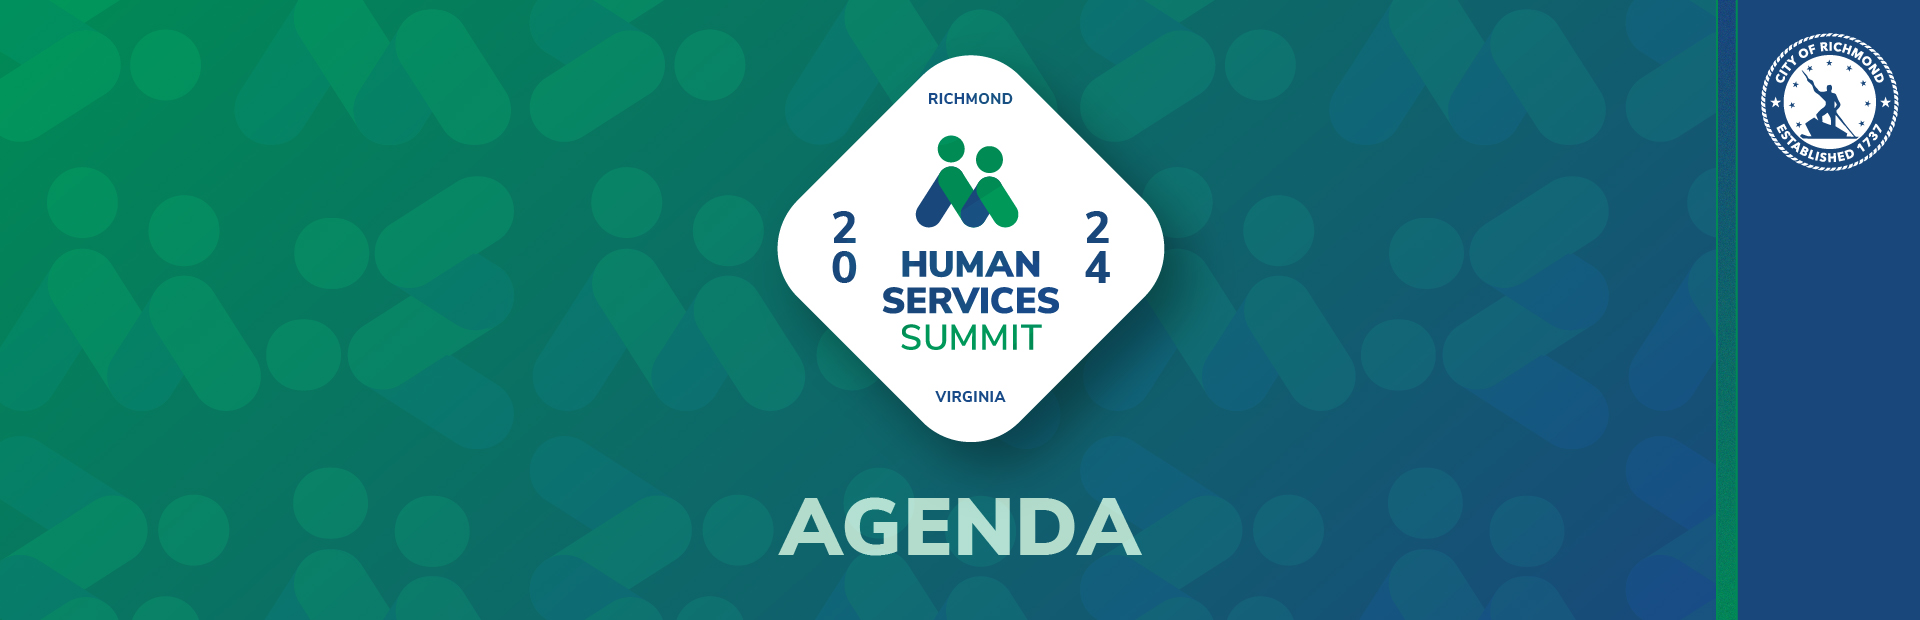 Human Services Summit Agenda Header Graphic